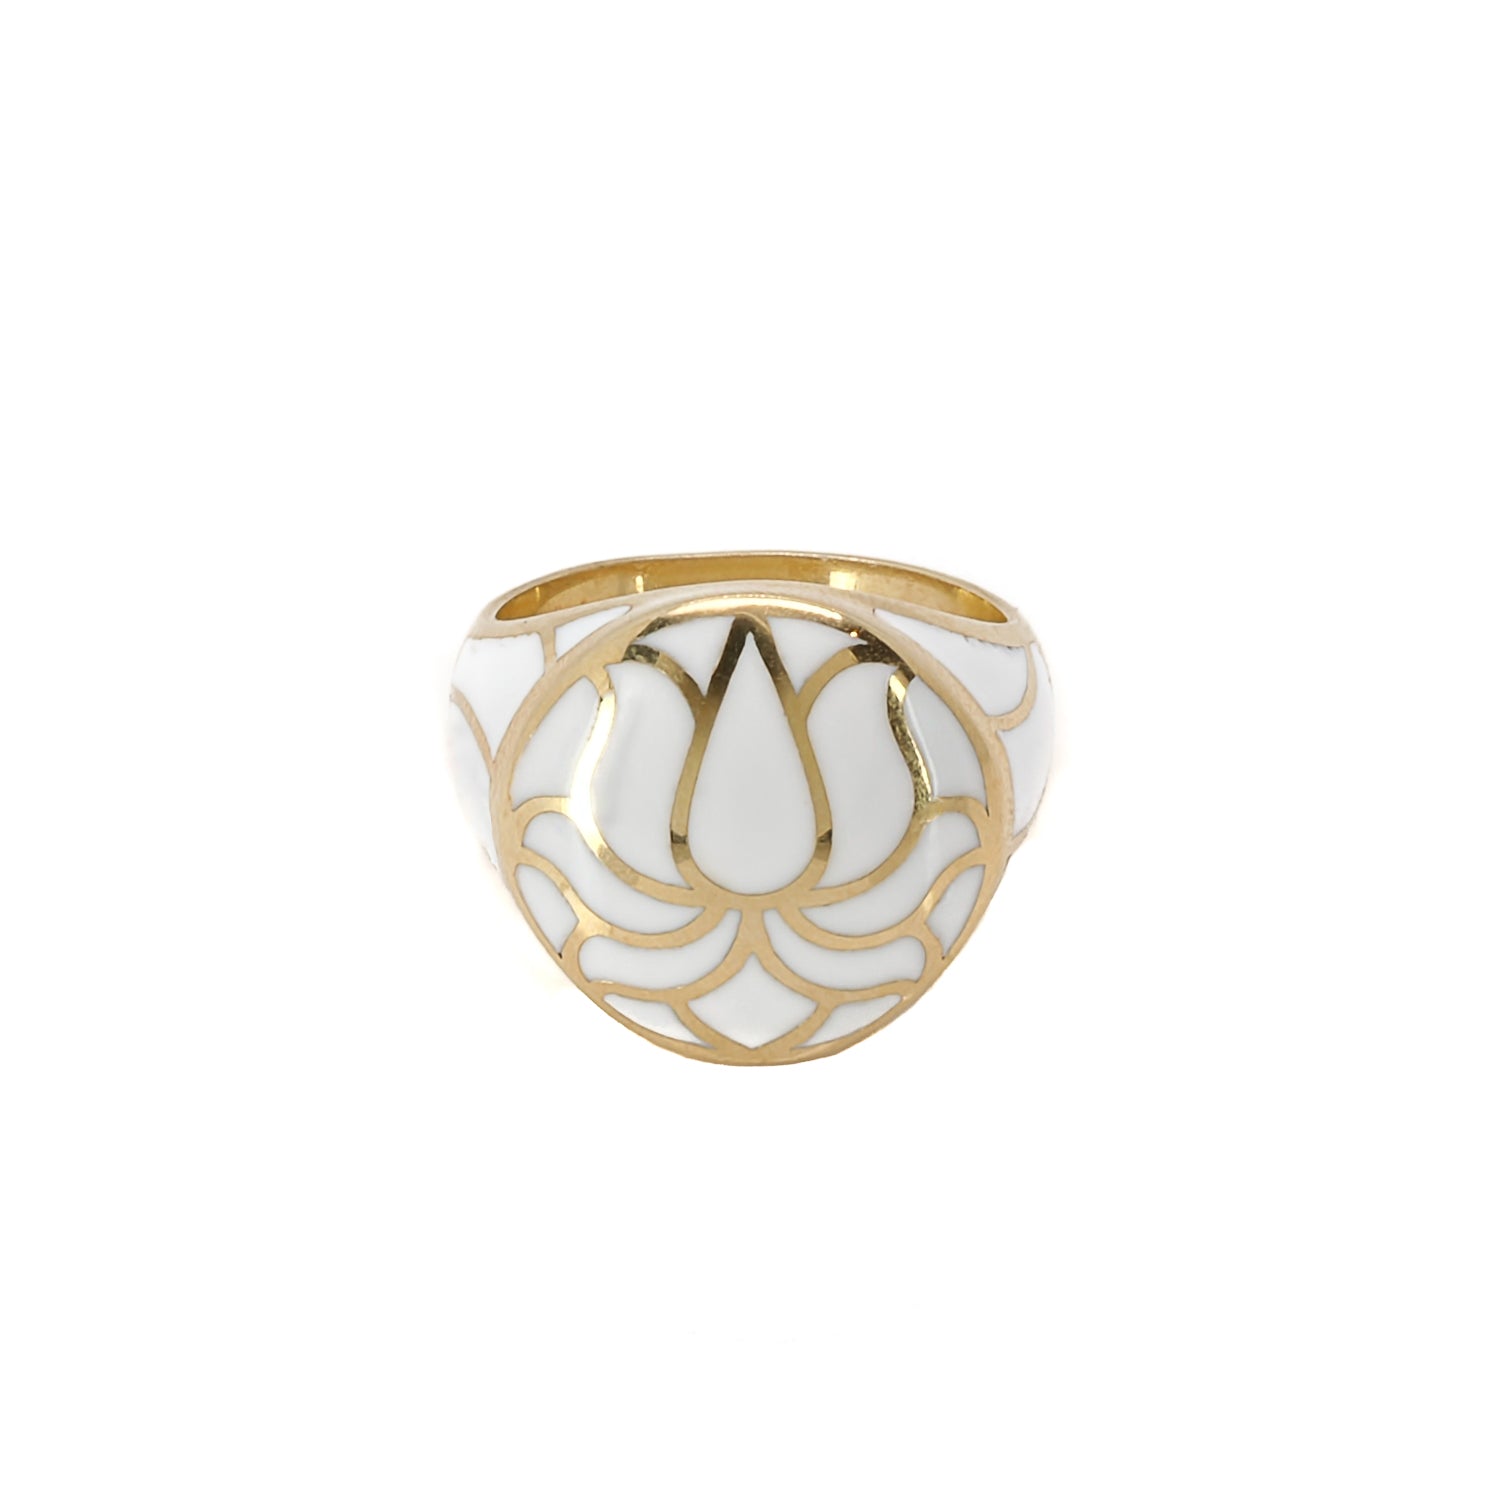 Spiritual Growth Lotus Flower Ring - Sterling Silver & White Enamel